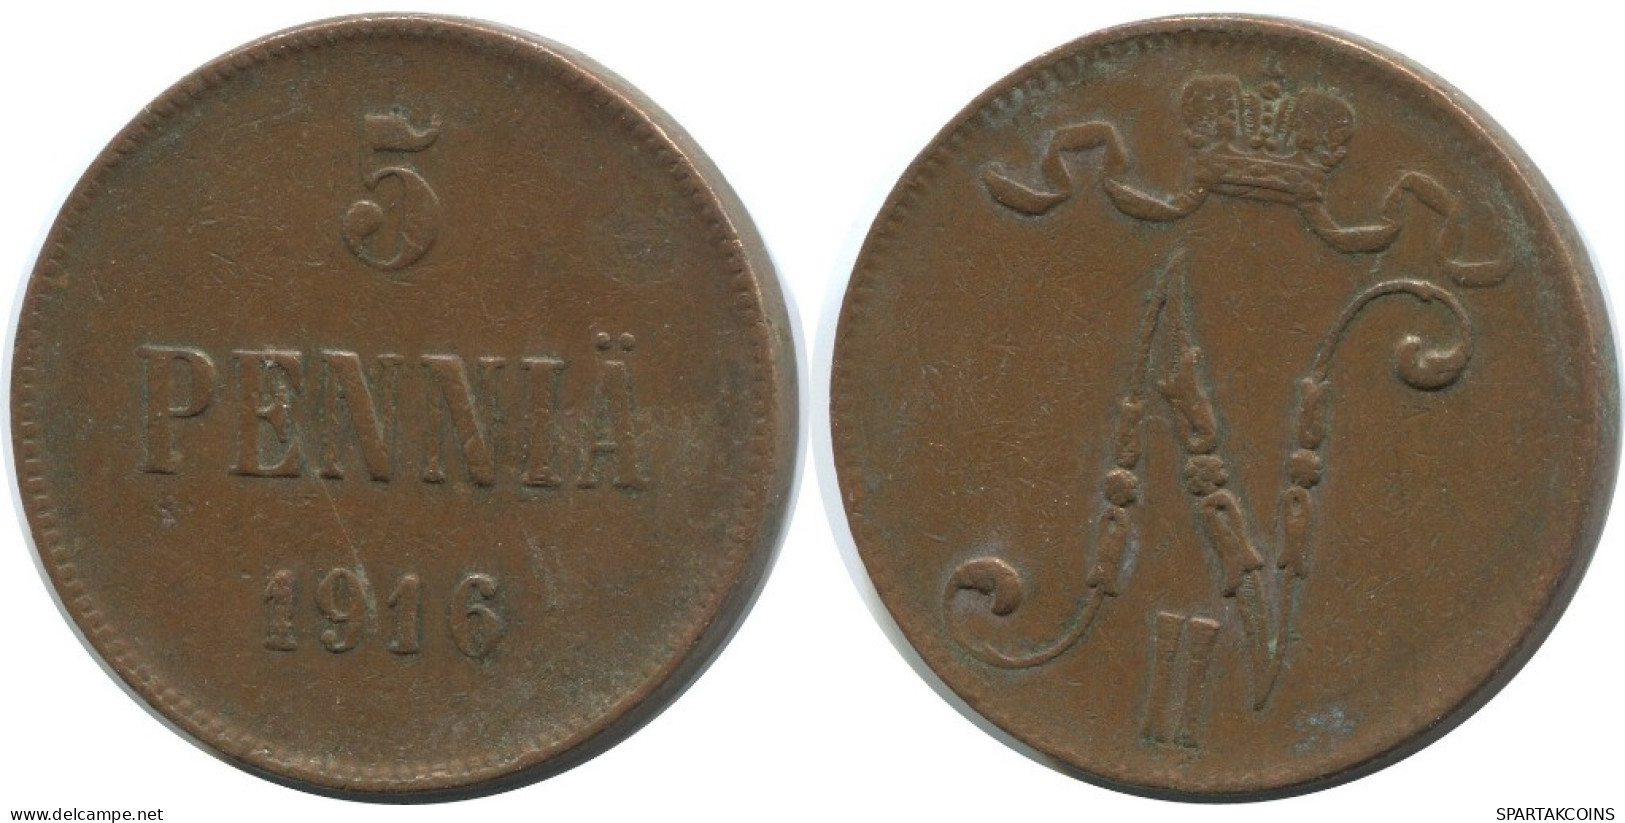 5 PENNIA 1916 FINLANDIA FINLAND Moneda RUSIA RUSSIA EMPIRE #AB263.5.E.A - Finnland